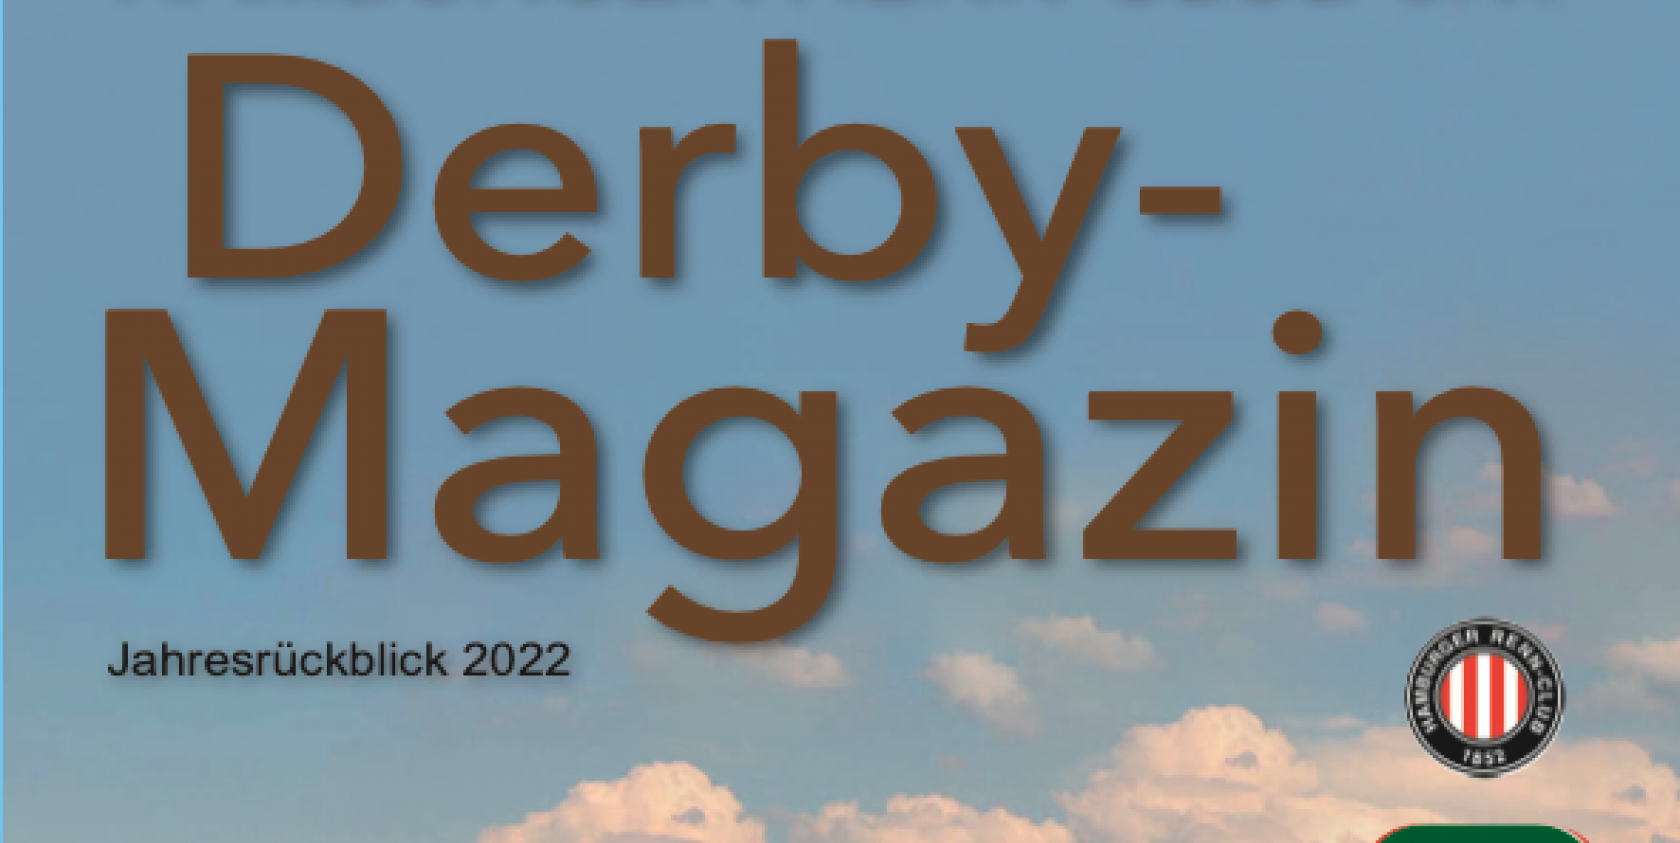 Das Fotobuch zum Derby-Meeting 2022